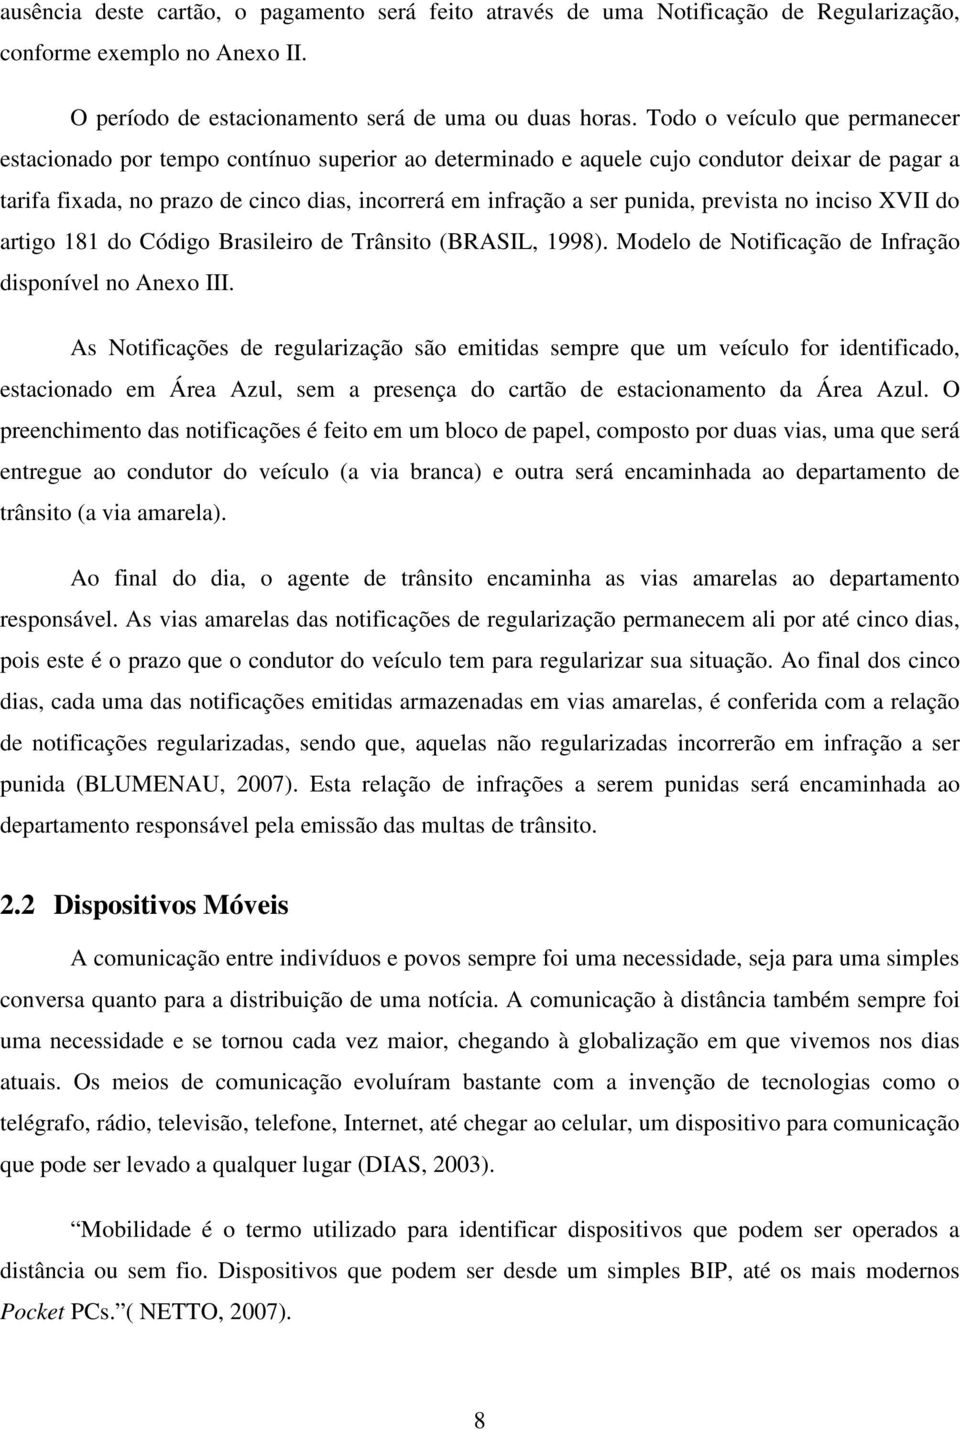 punida, prevista no inciso XVII do artigo 181 do Código Brasileiro de Trânsito (BRASIL, 1998). Modelo de Notificação de Infração disponível no Anexo III.